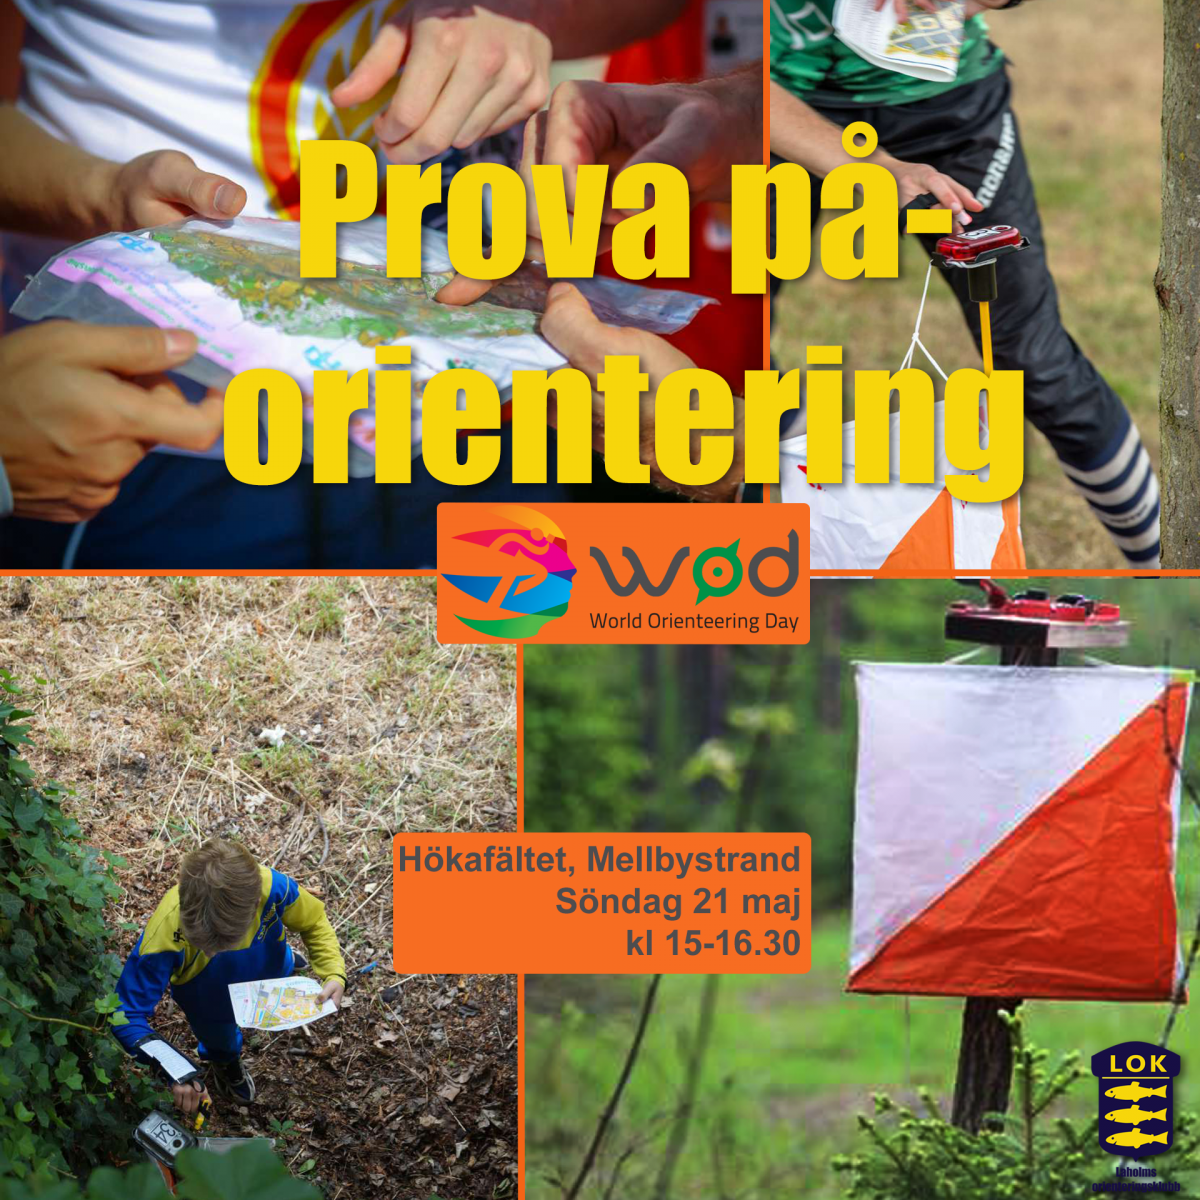 image: Prova orientering på World orienteering day på Hökafältet